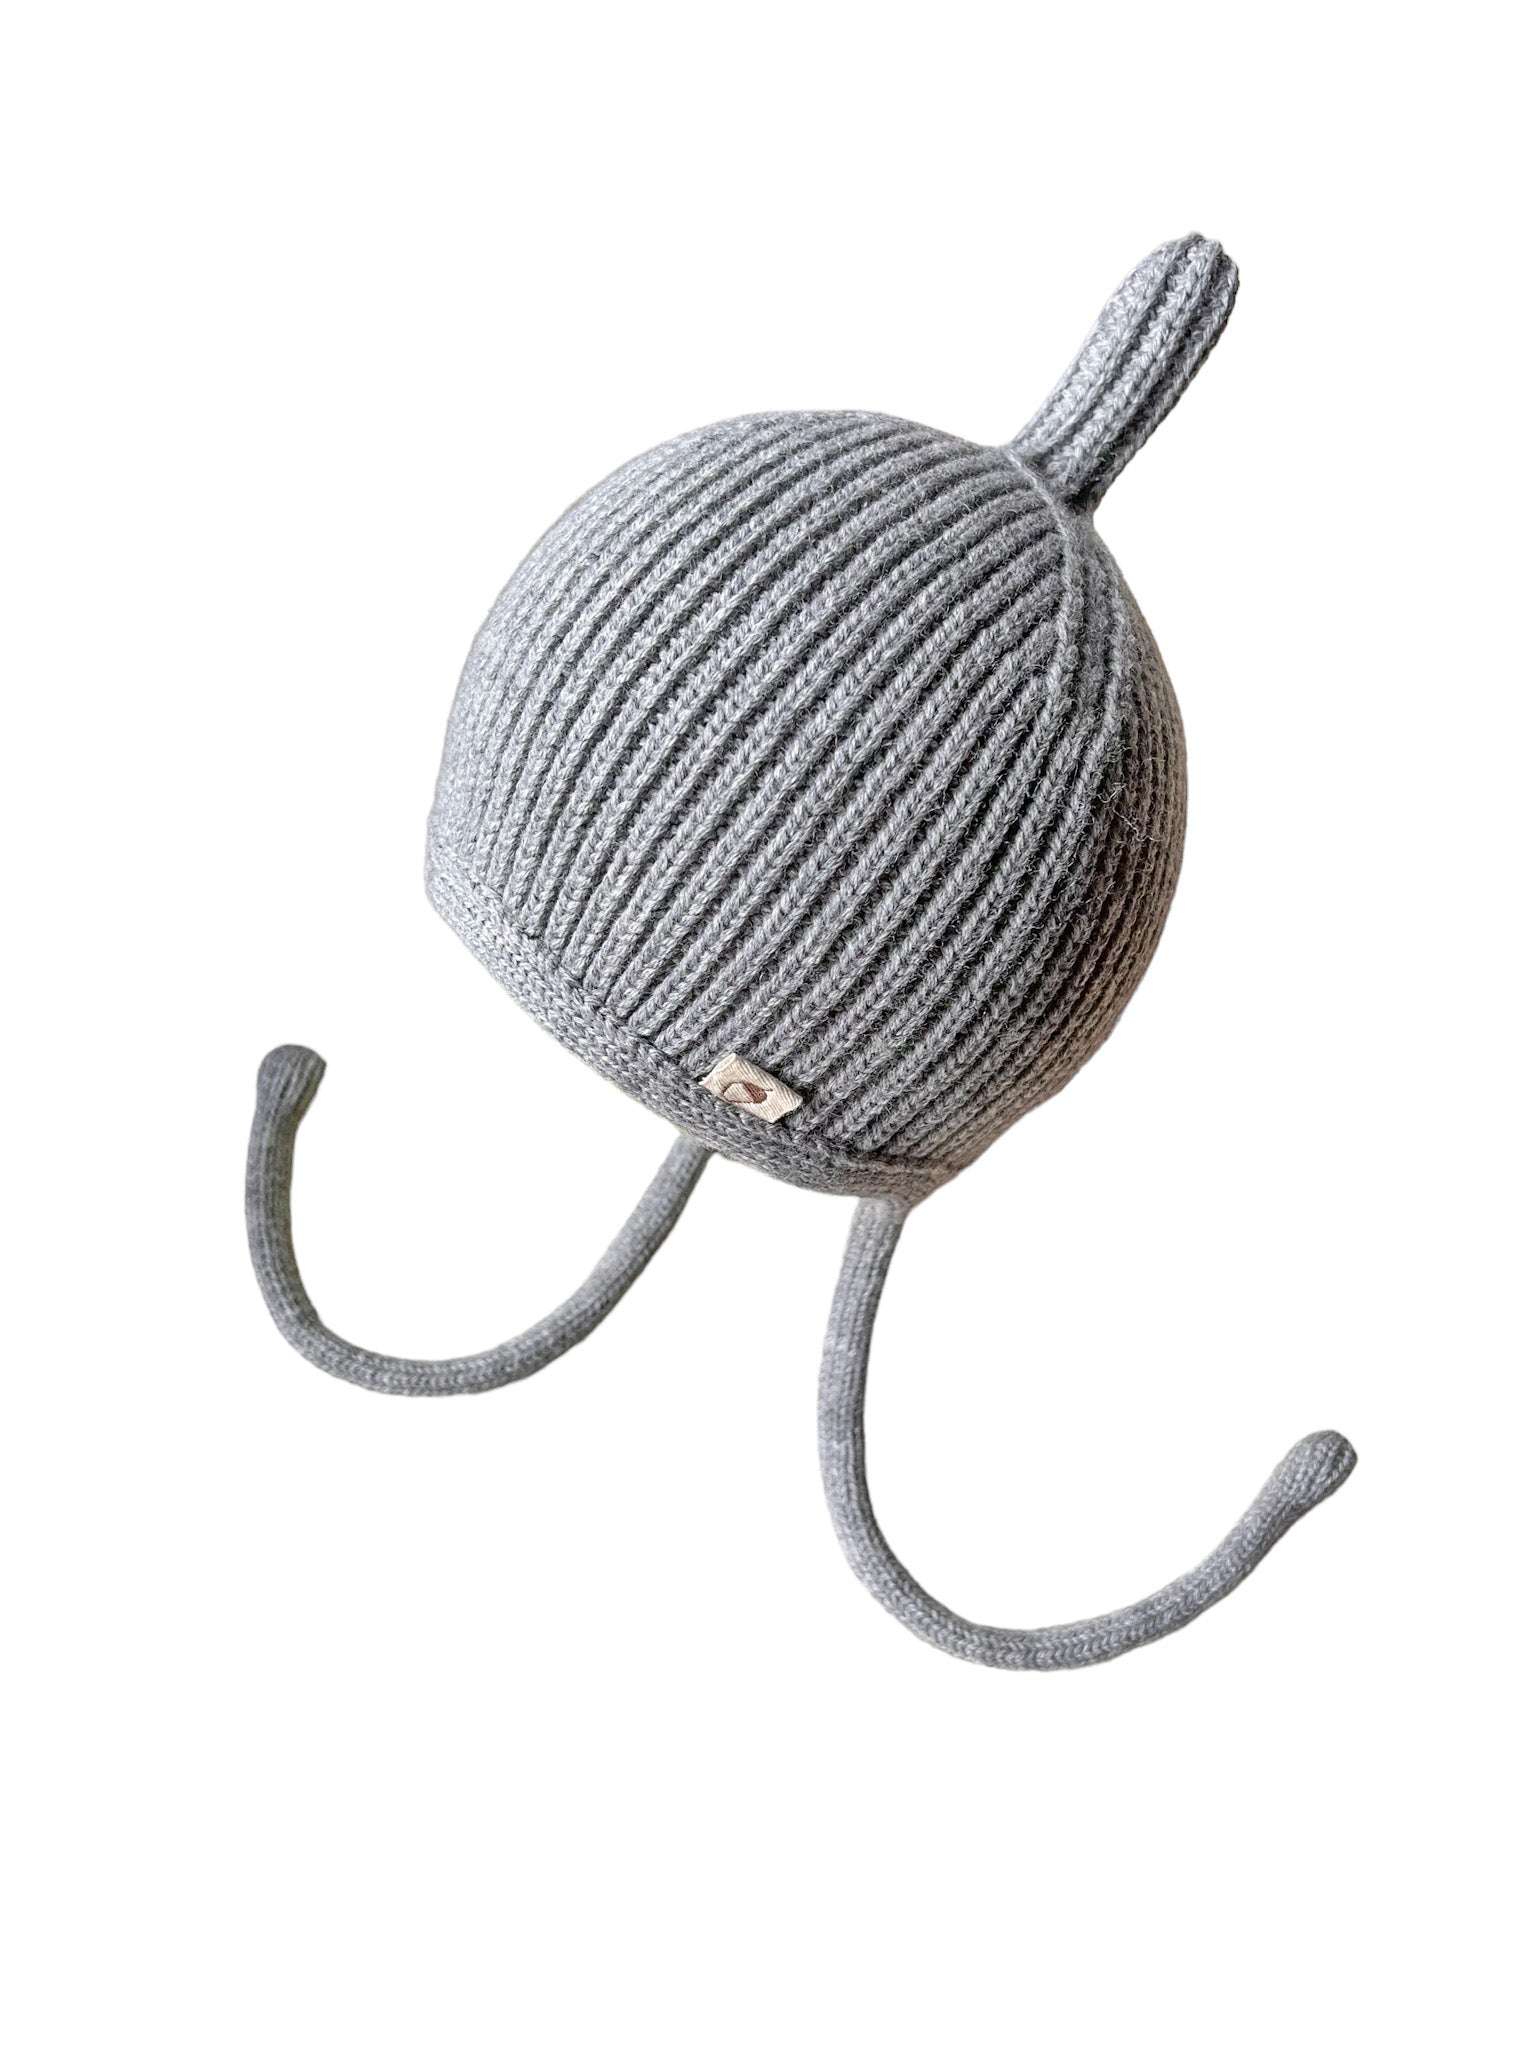 Oh Chapô Pinni Hellgrau - Die Mütze aus 100% Merinowolle